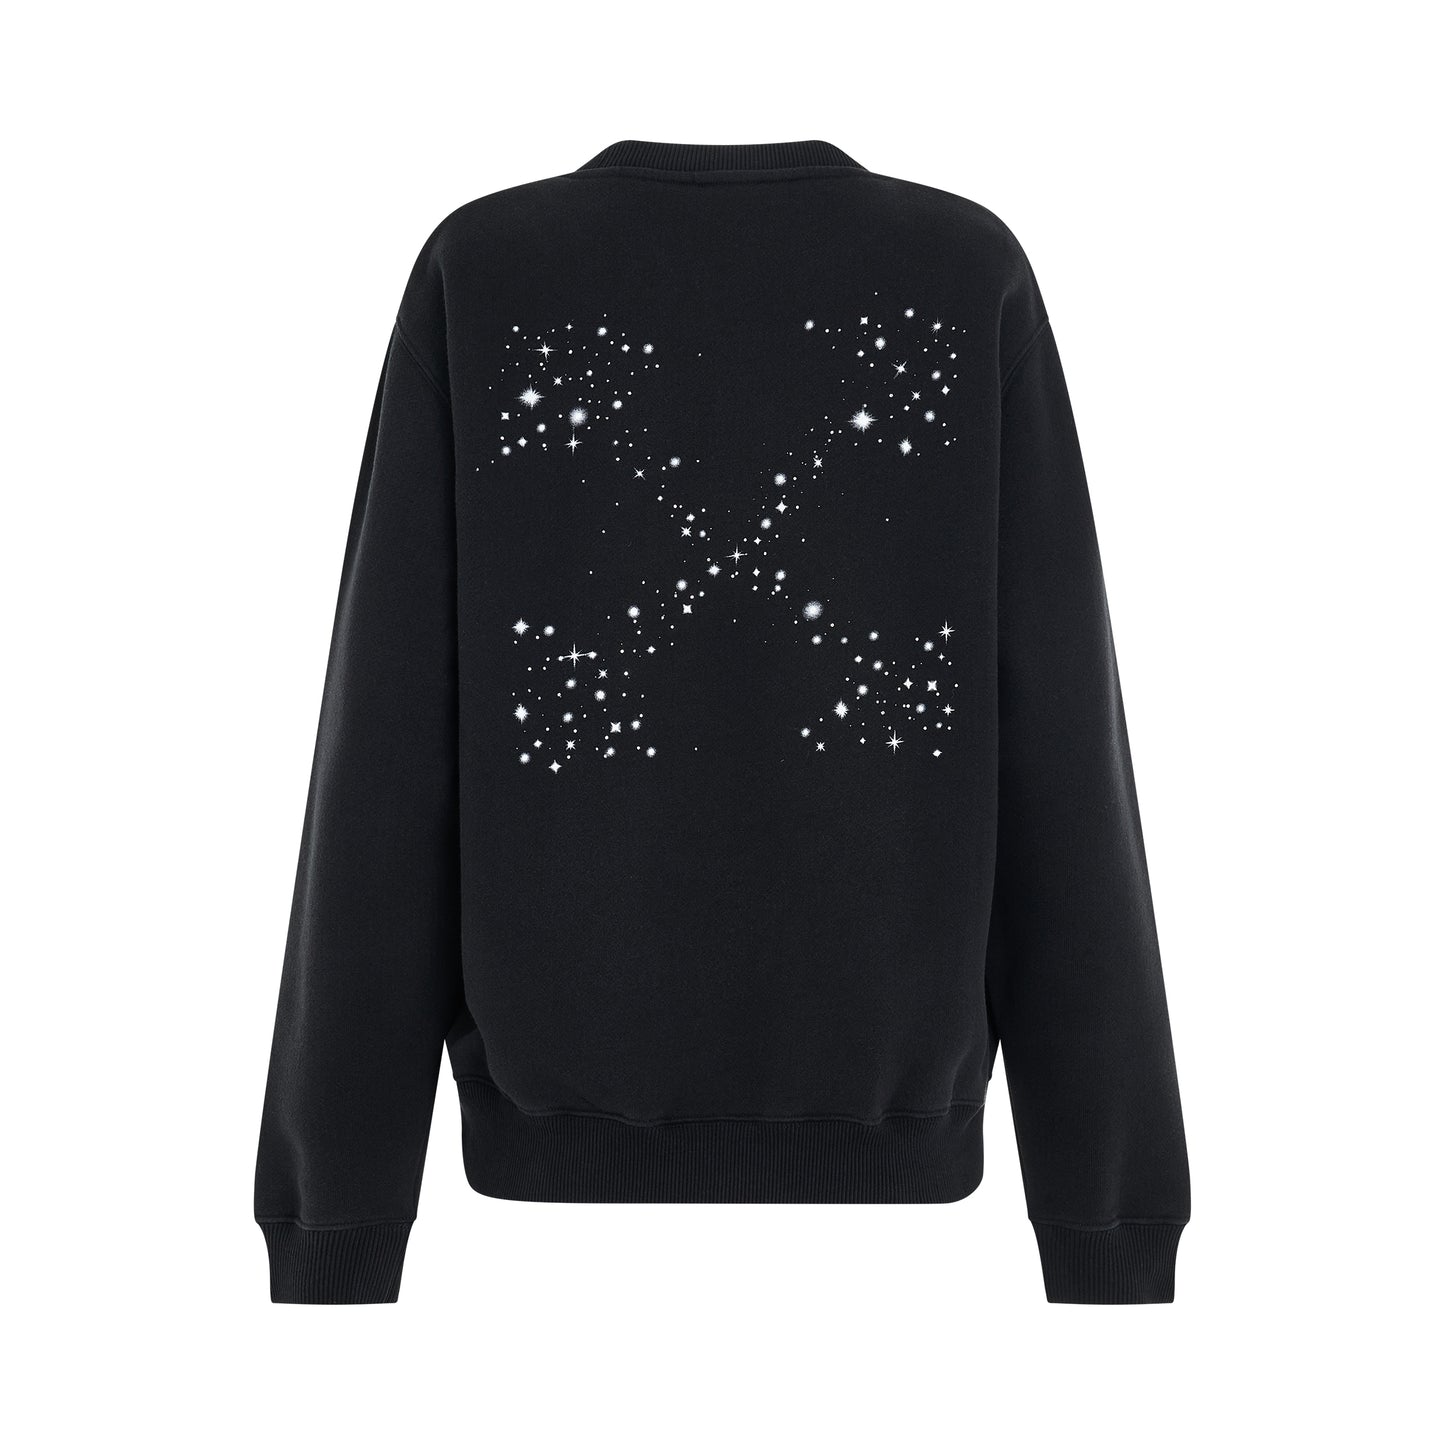 Bling Stars Arrow Sweatshirt in Black